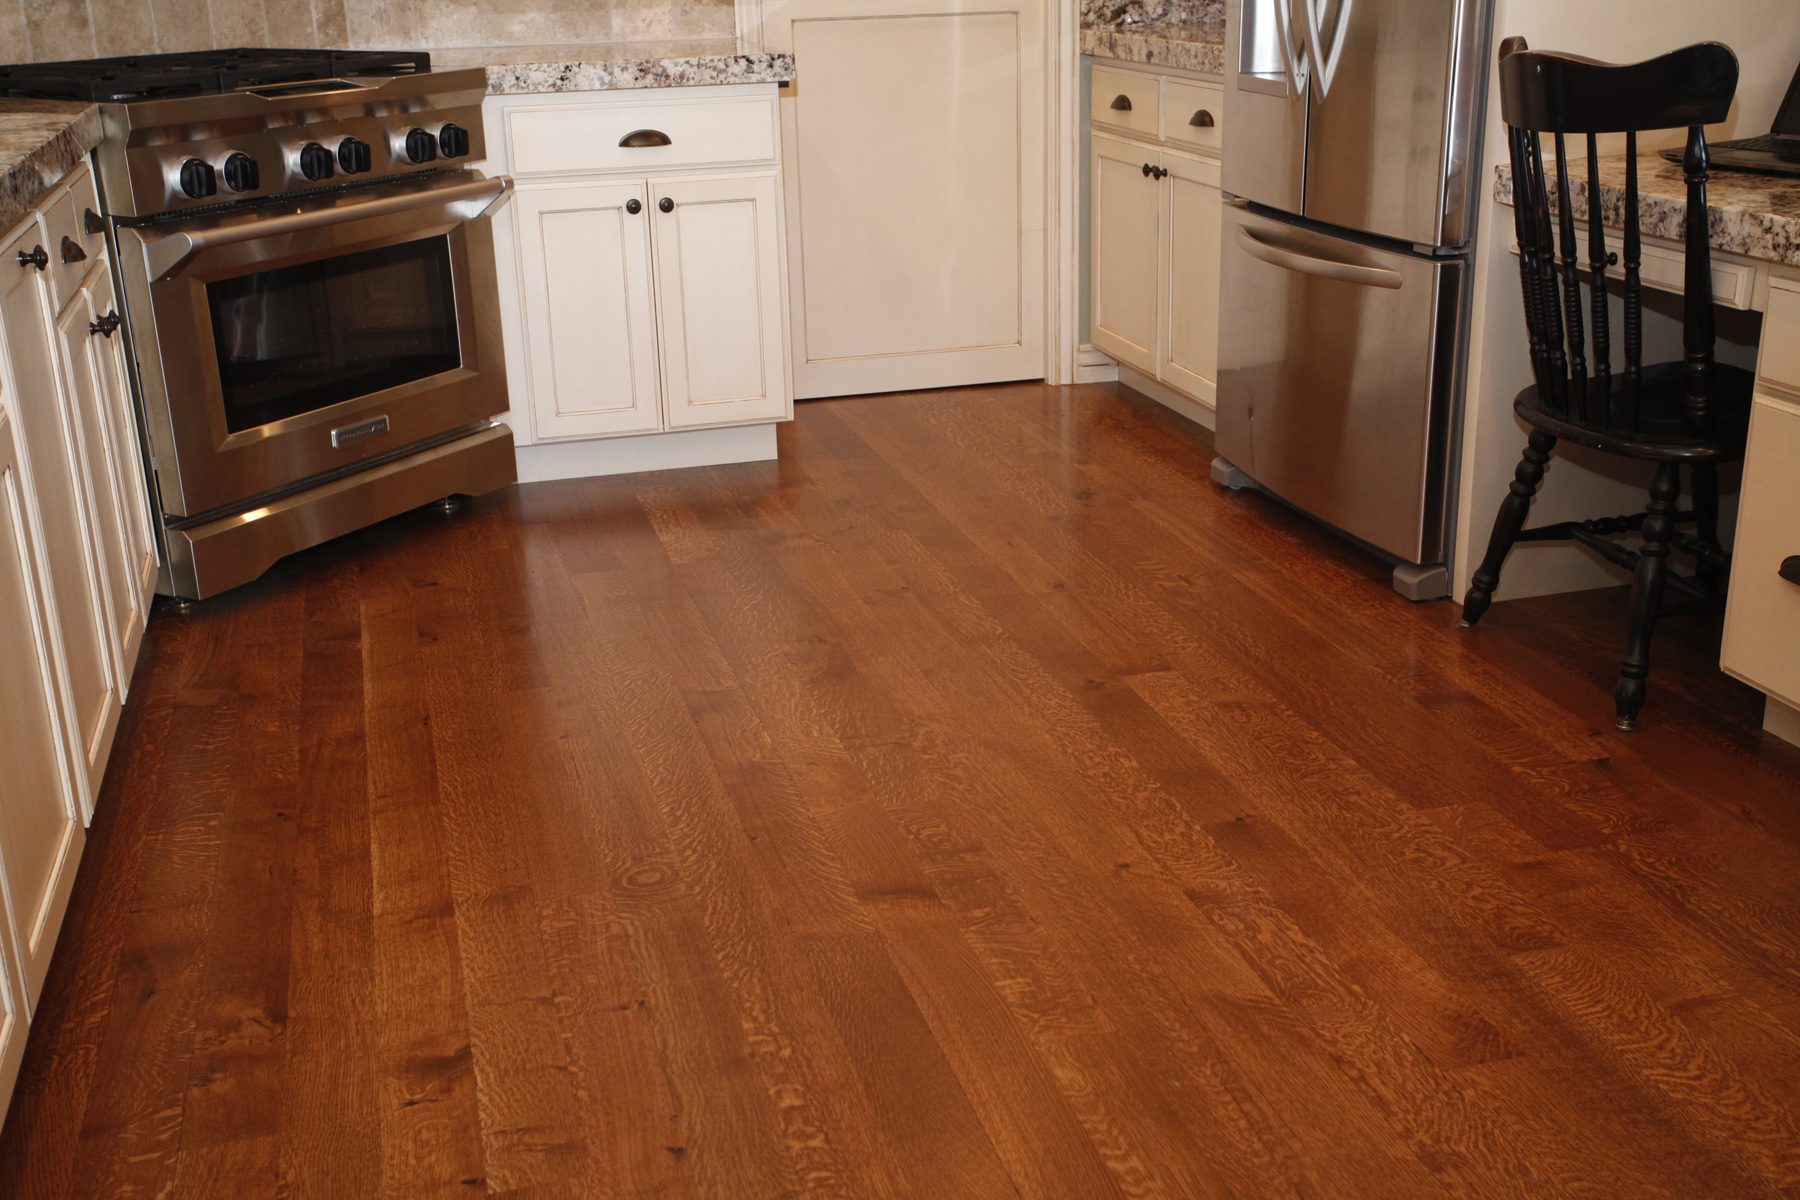 kitchen hardwood floor light oakd